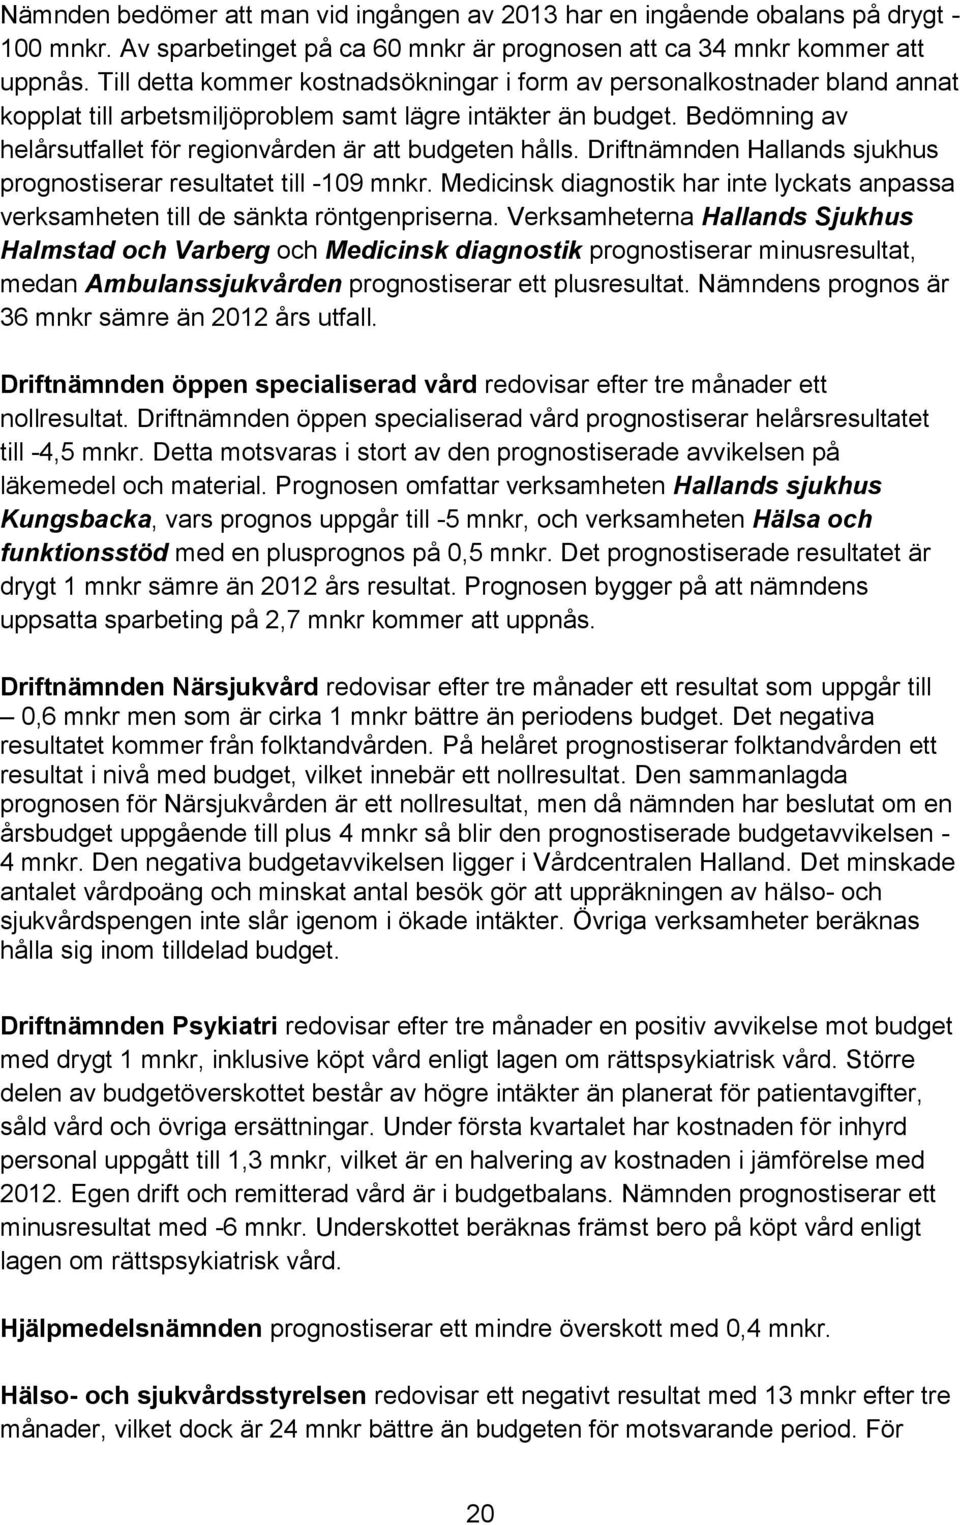 Bedömning av helårsutfallet för regionvården är att budgeten hålls. Driftnämnden Hallands sjukhus prognostiserar resultatet till -109 mnkr.